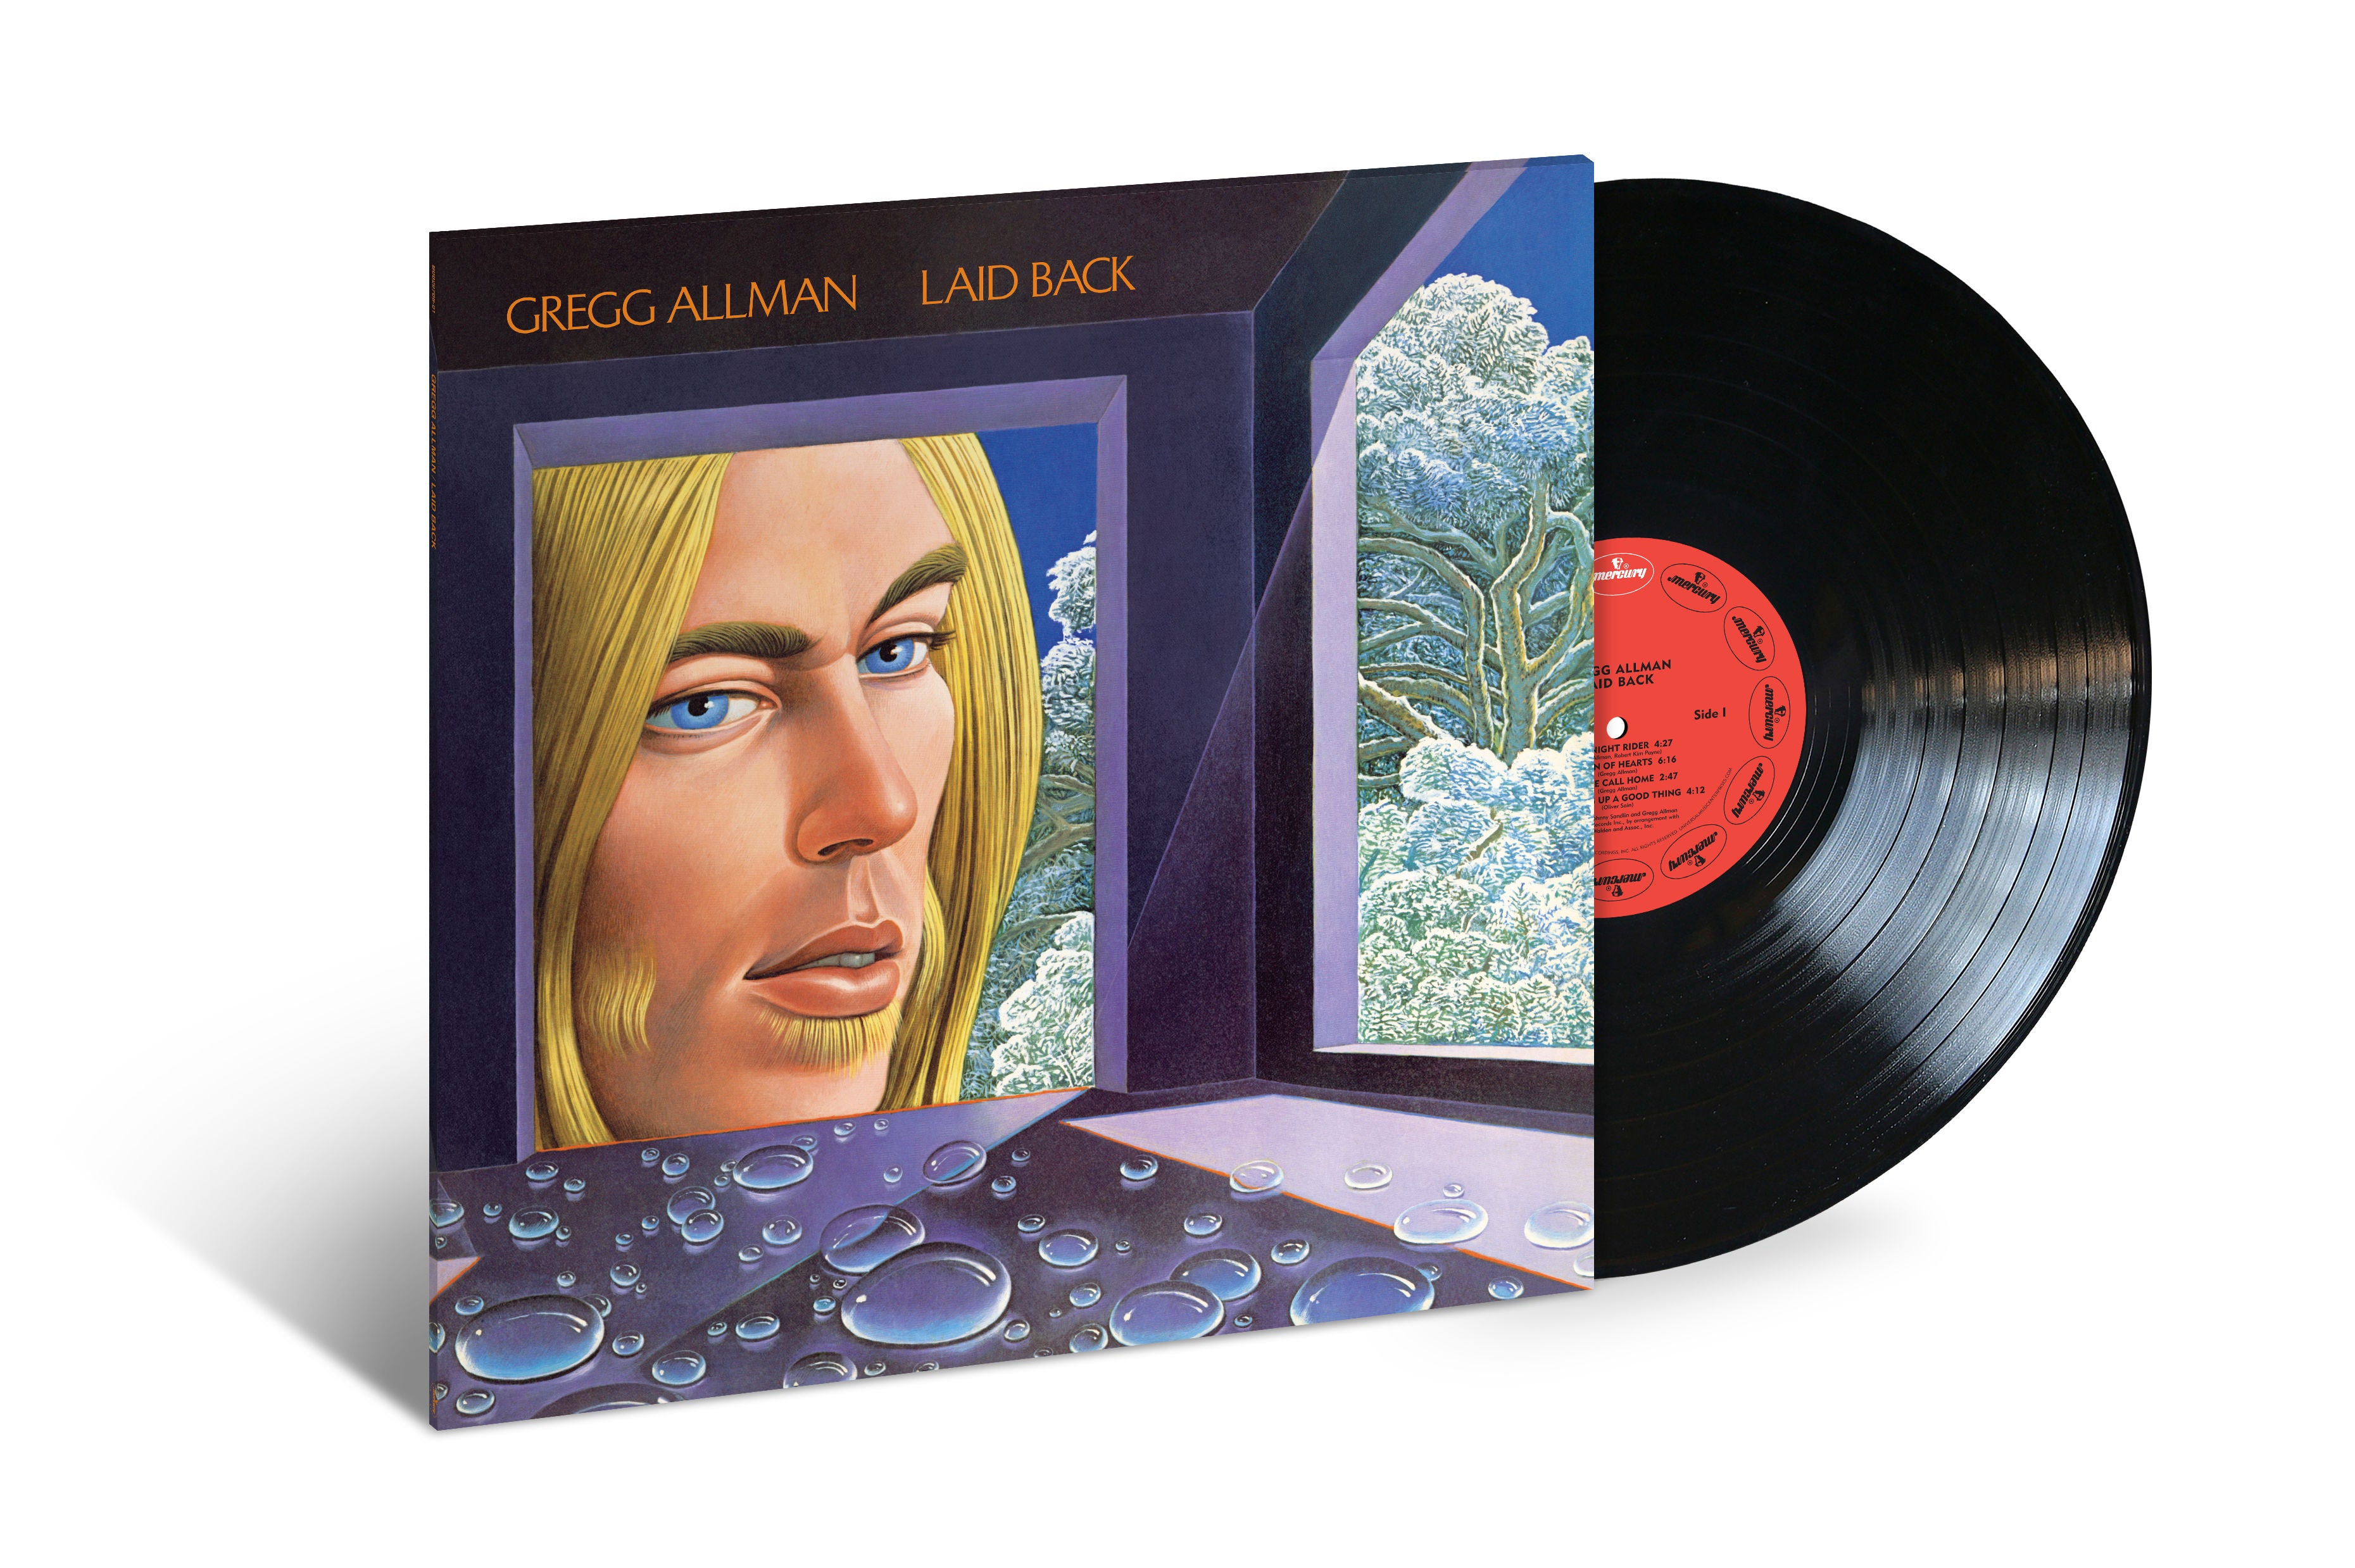 Gregg Allman - Laid Back: Vinyl LP